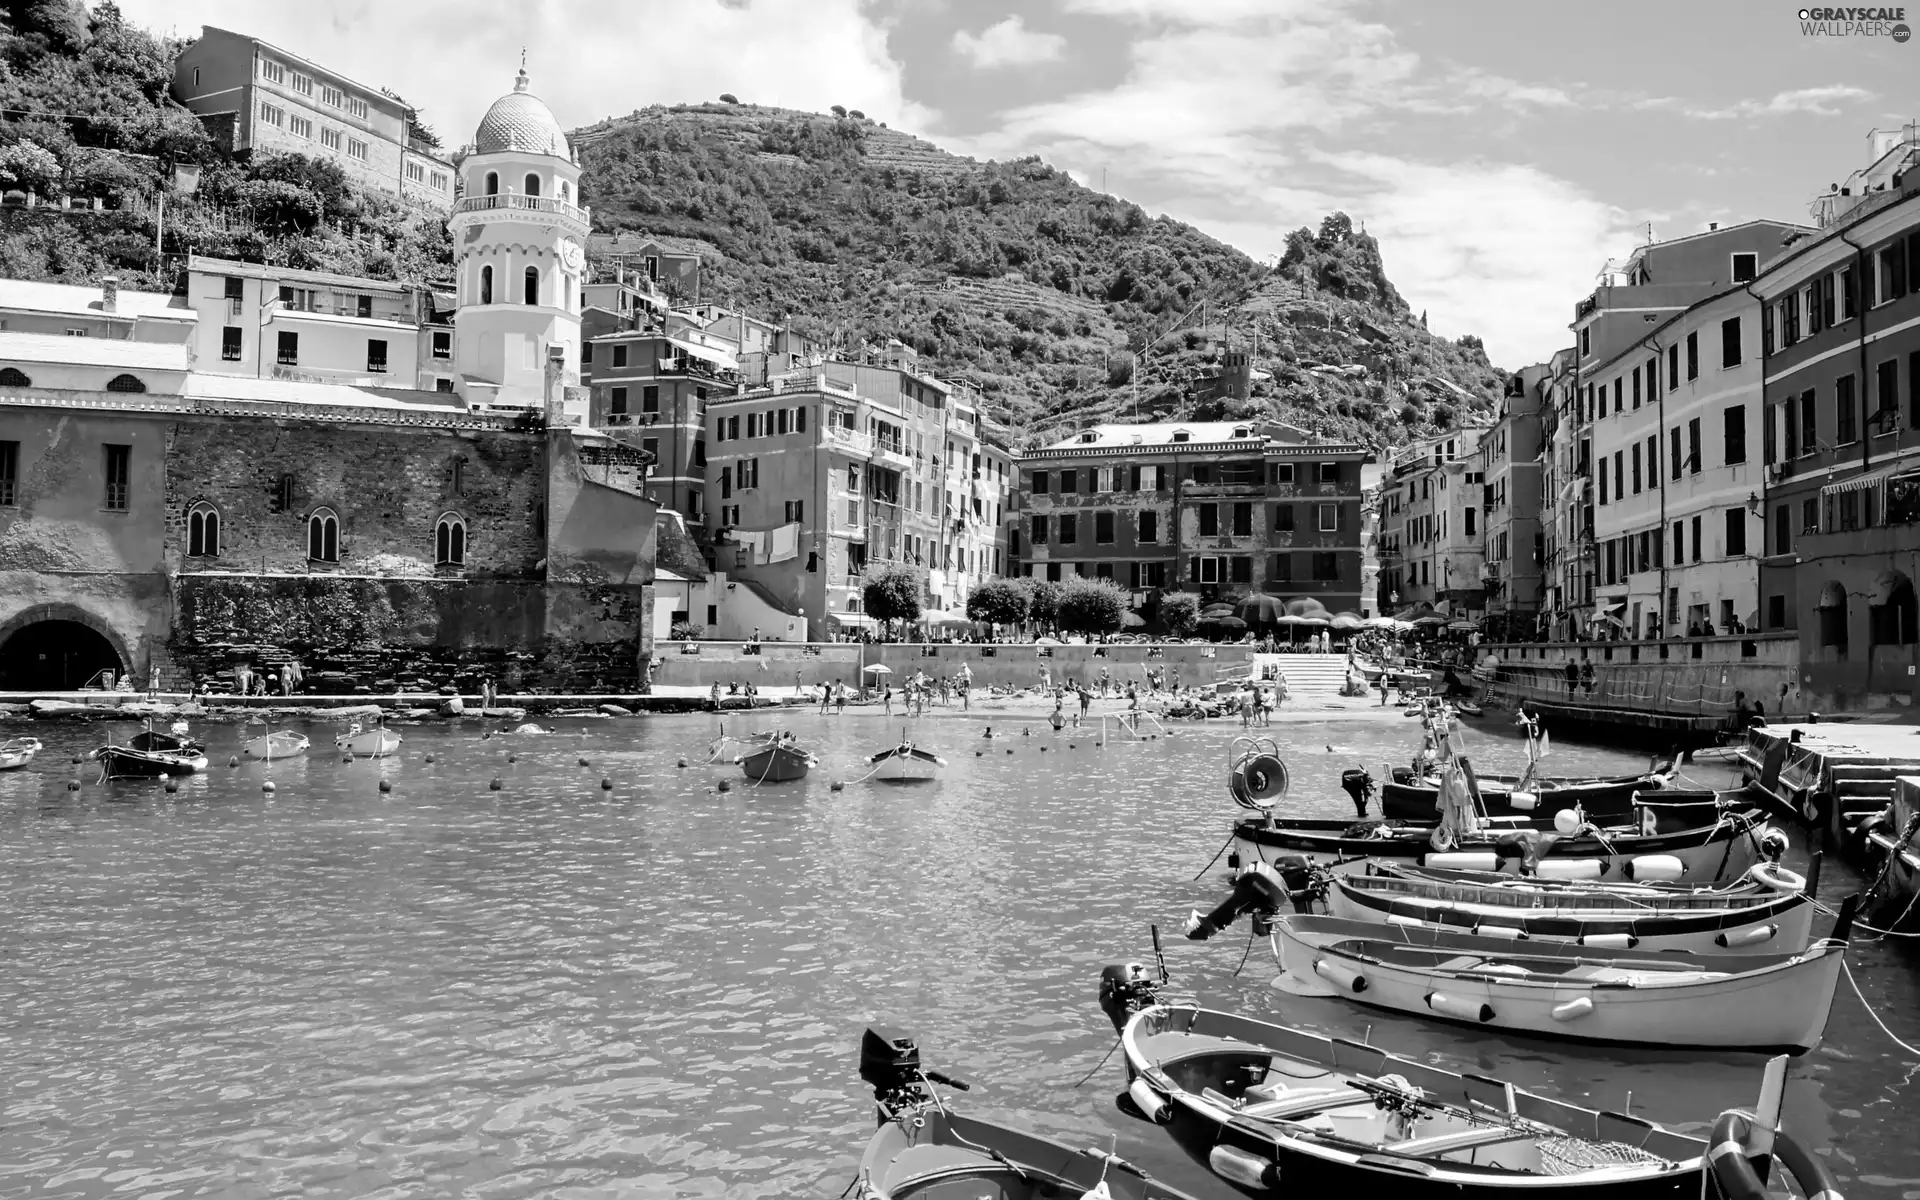 Italy, canal, Boats, Vernazza